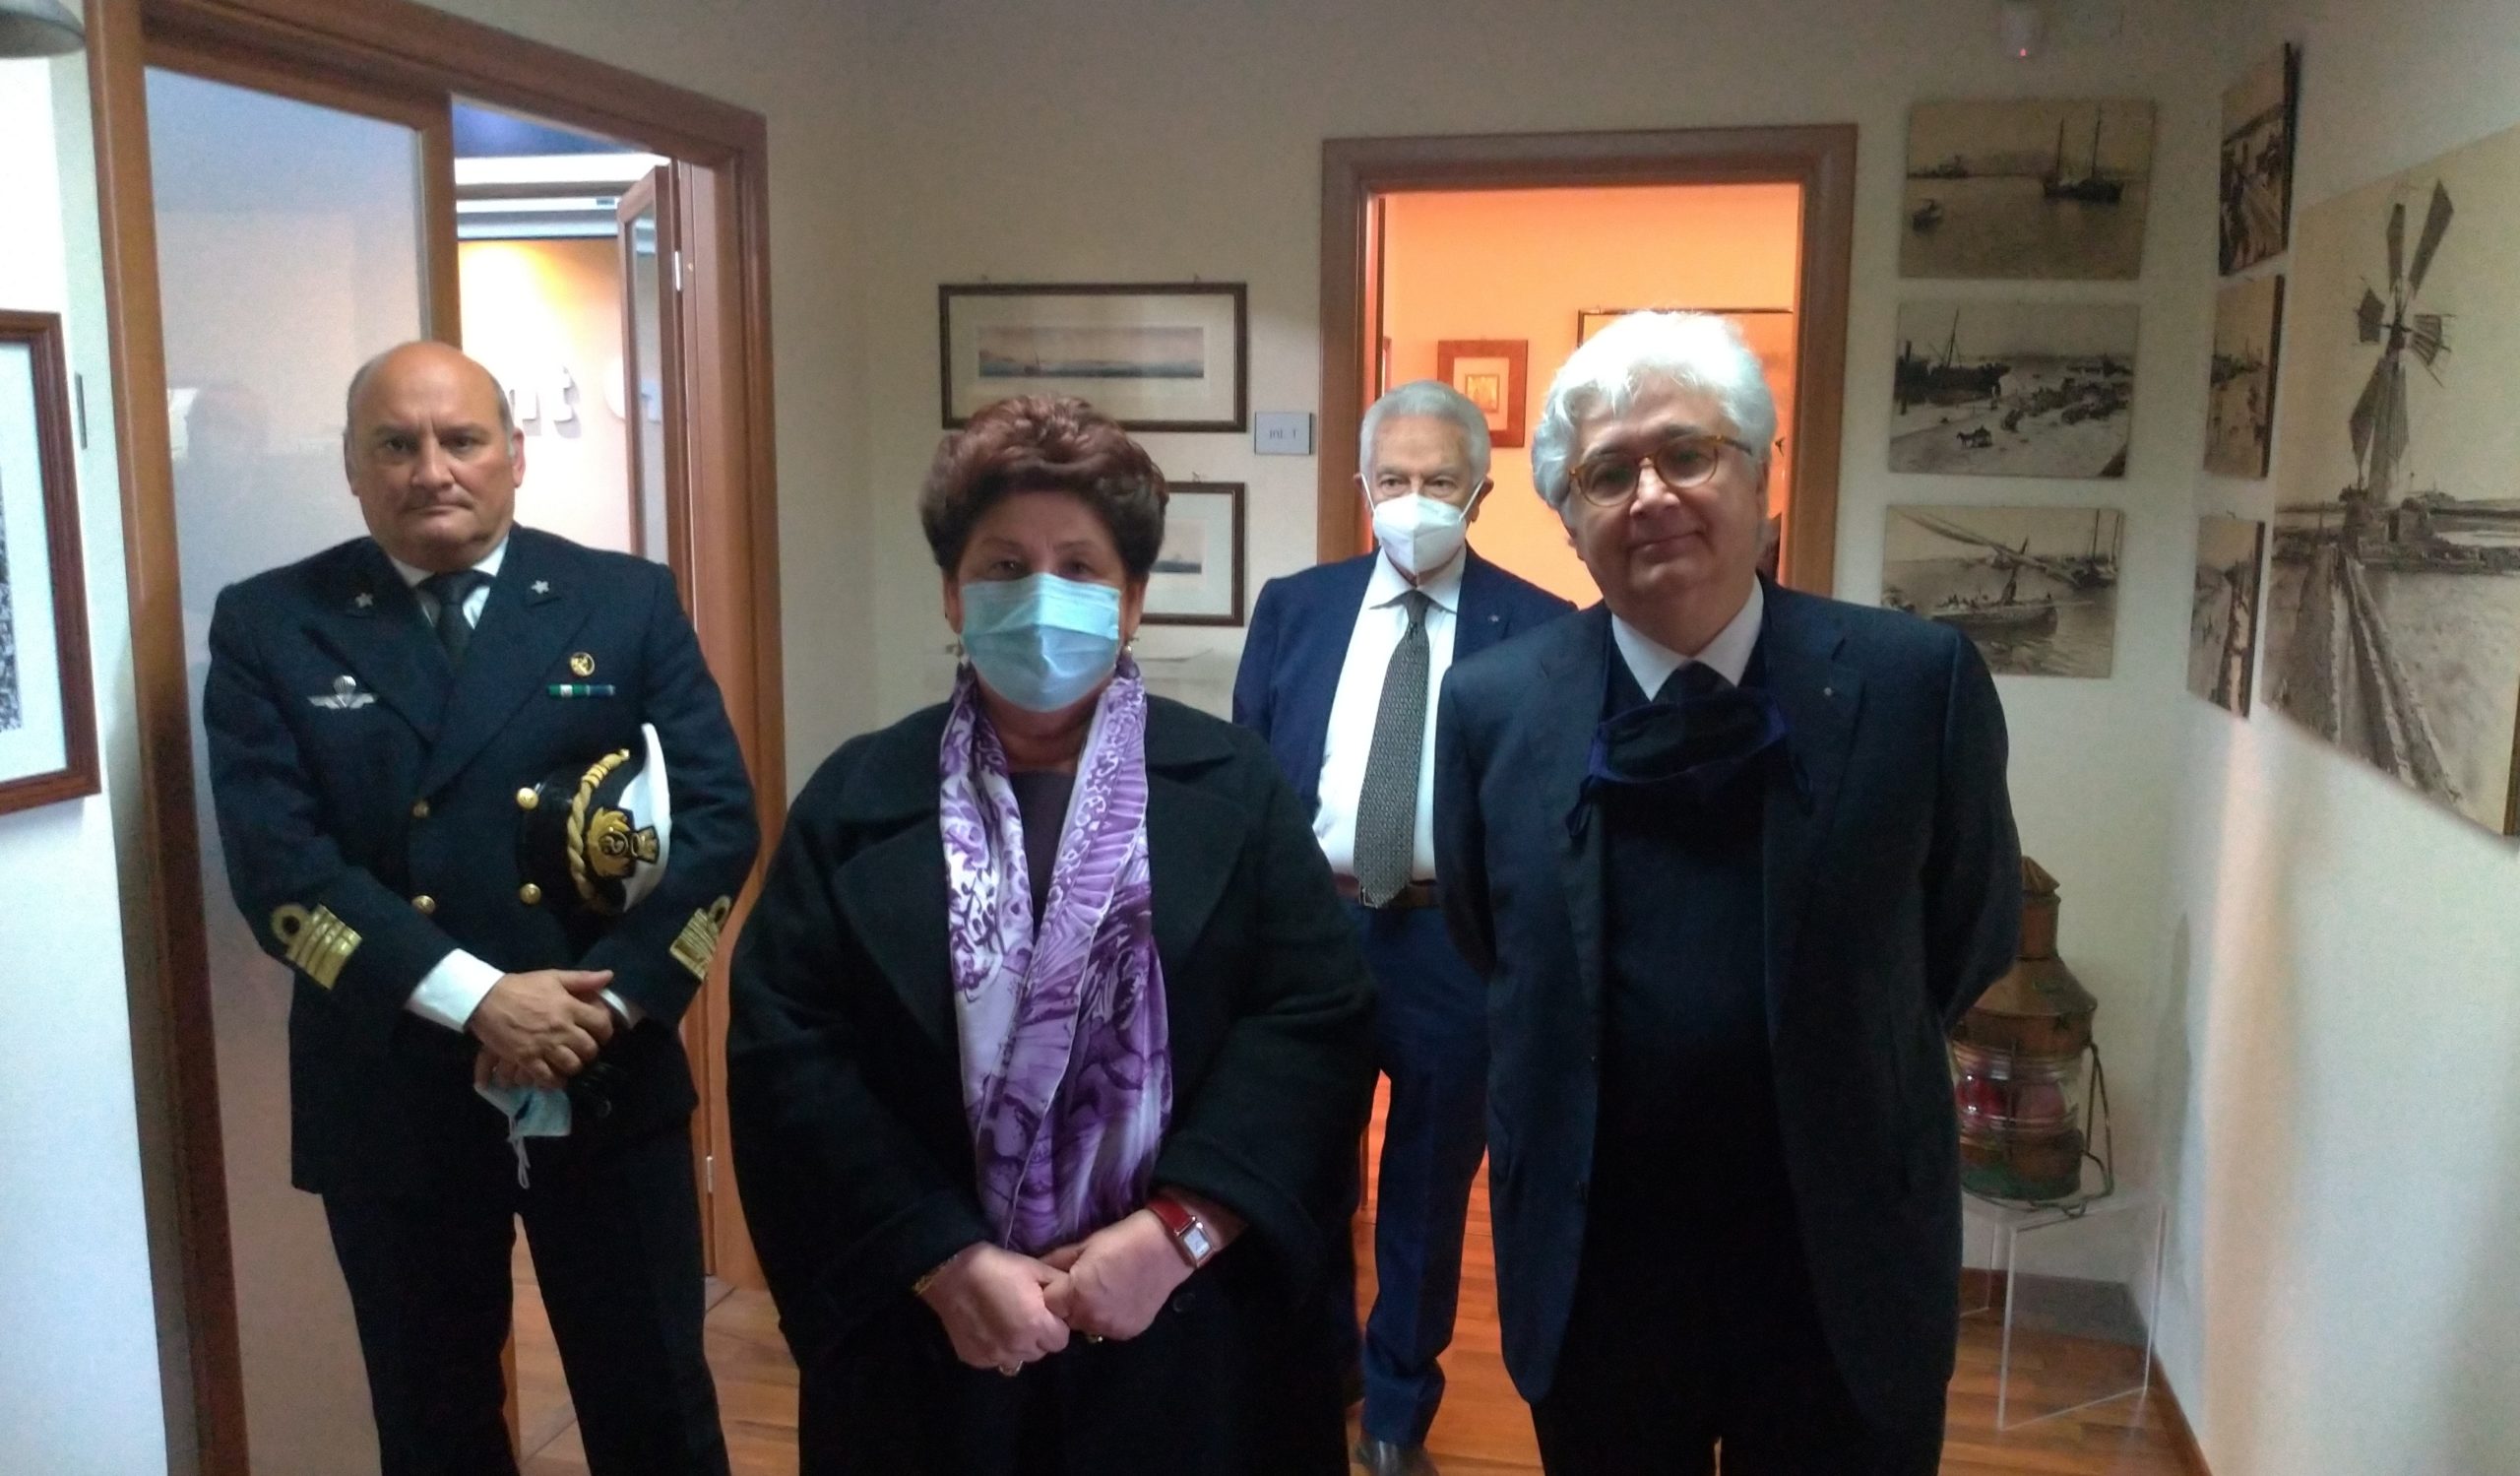 La vice ministra Teresa Bellanova incontra gli operatori portuali di Trapani rappresentati da Gaspare Panfalone